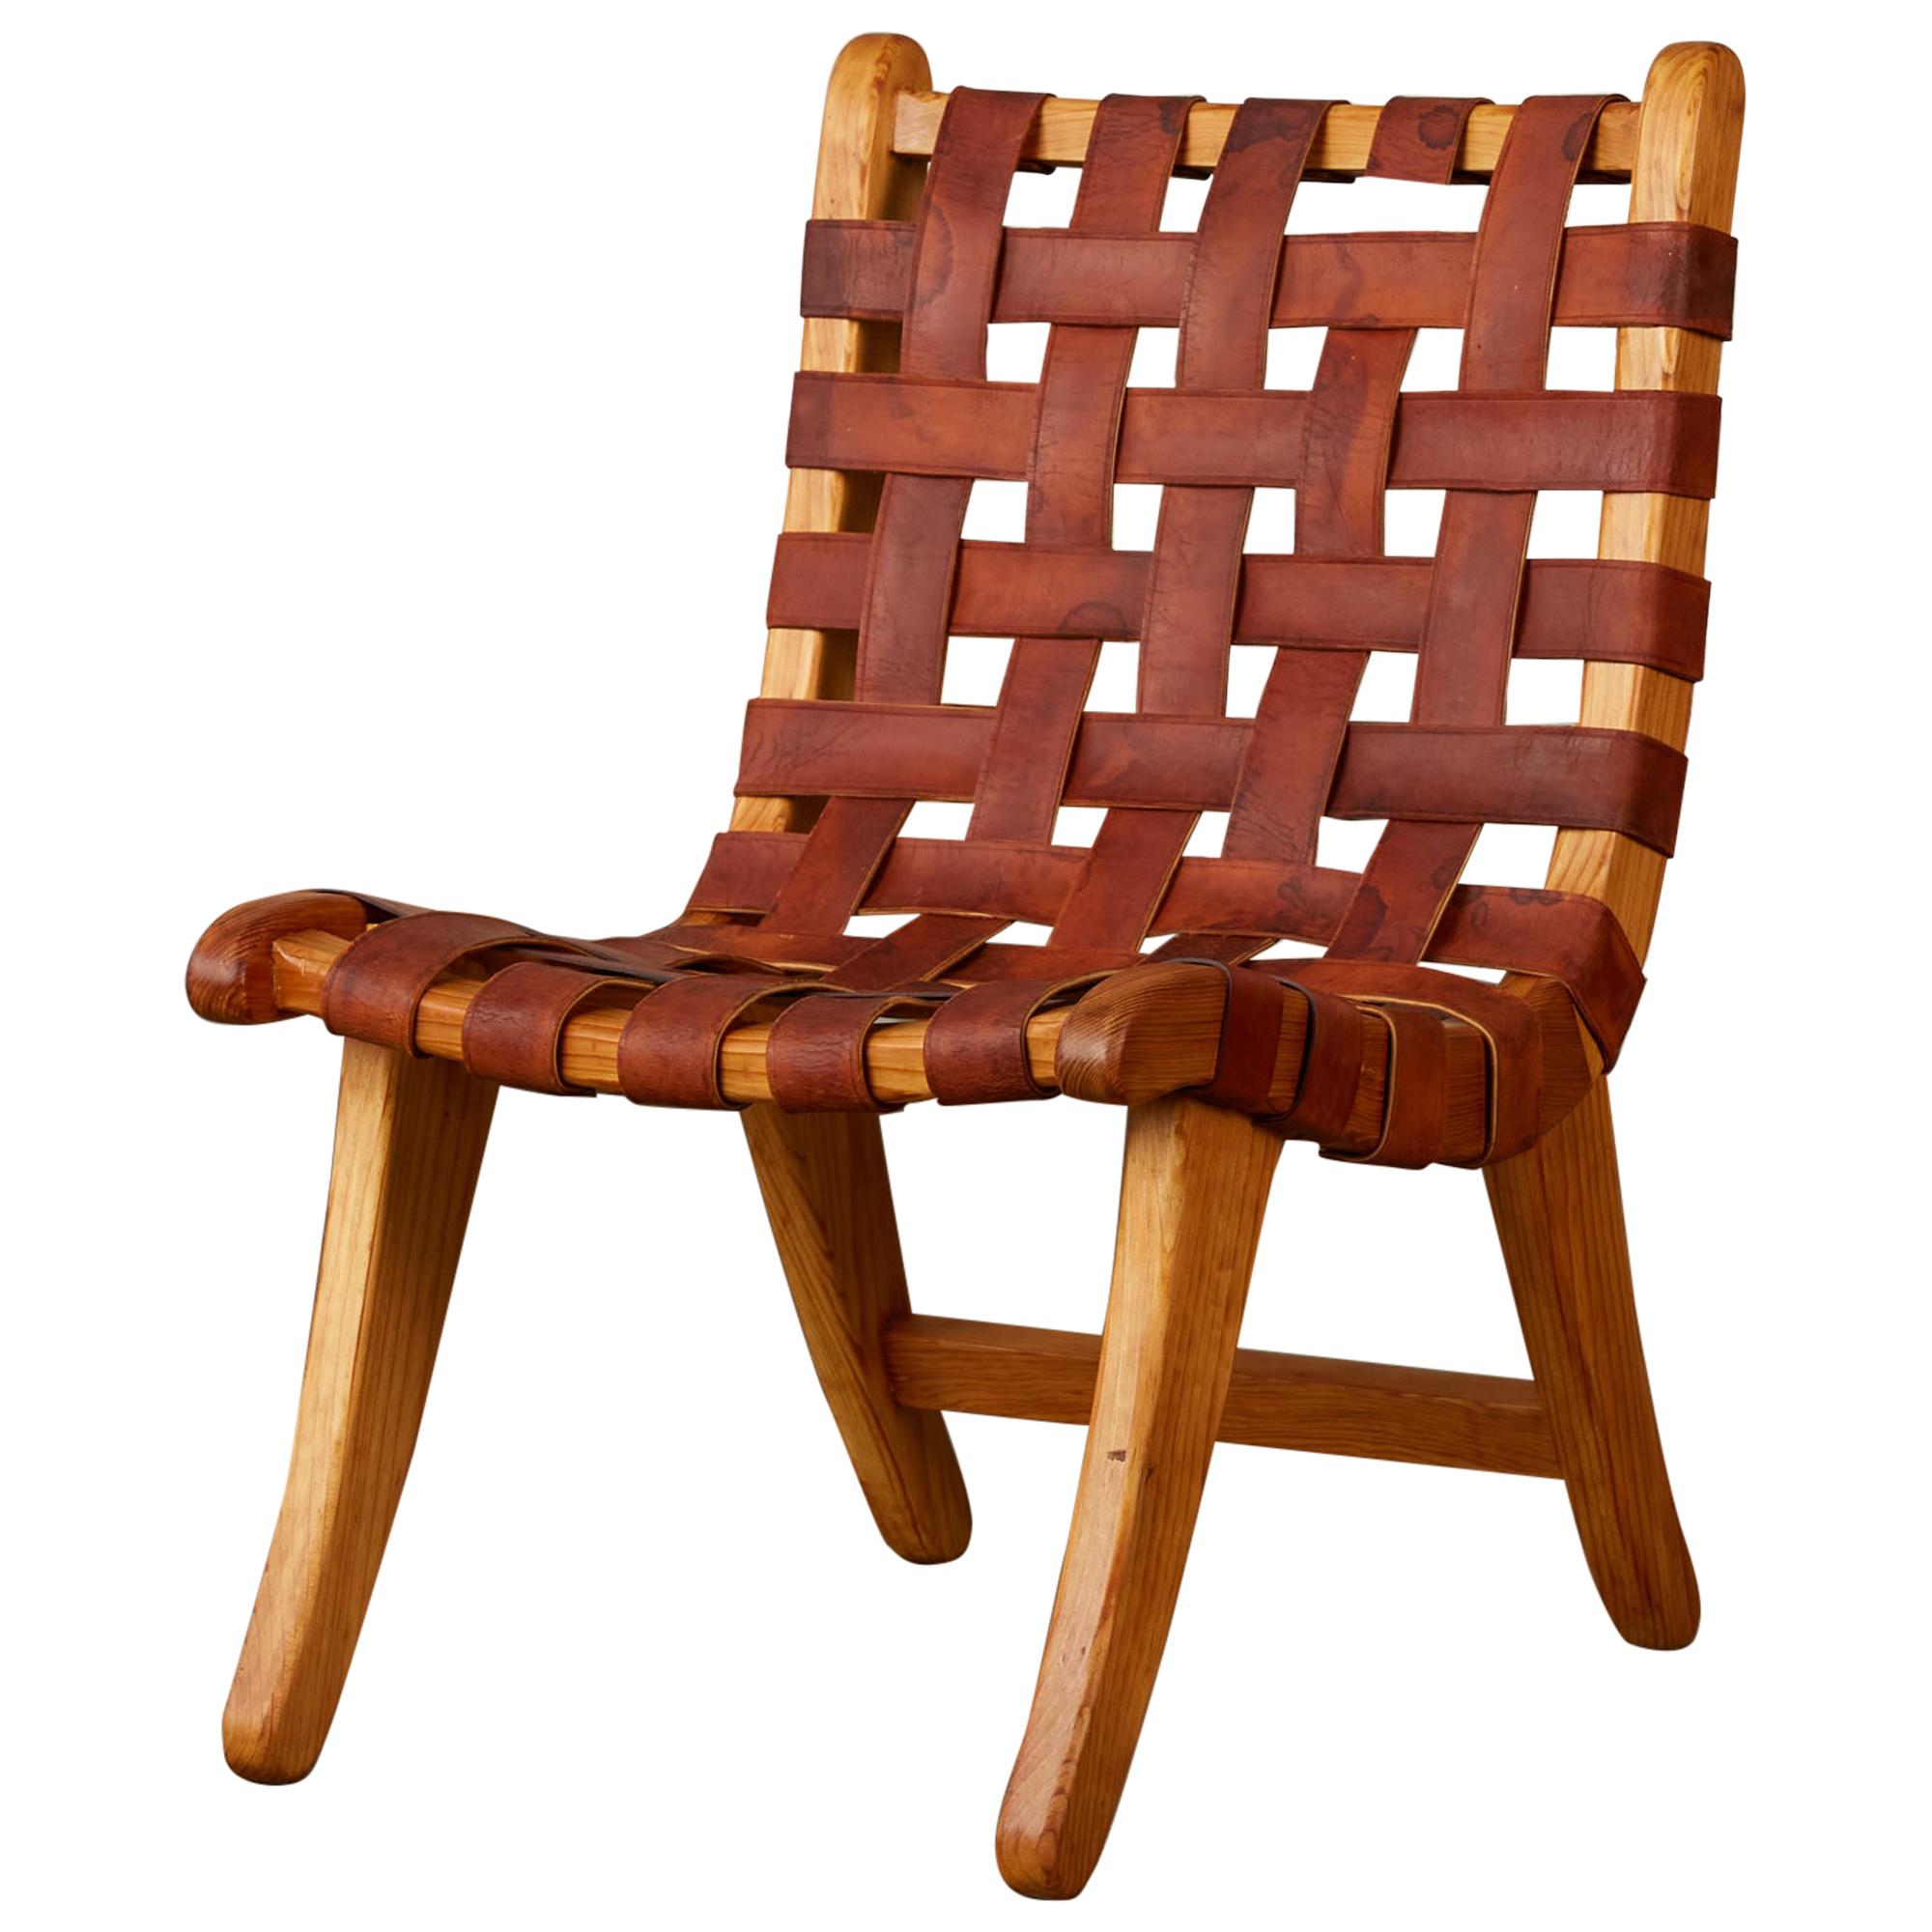 “San Miguelito” Chair by Michael van Beuren